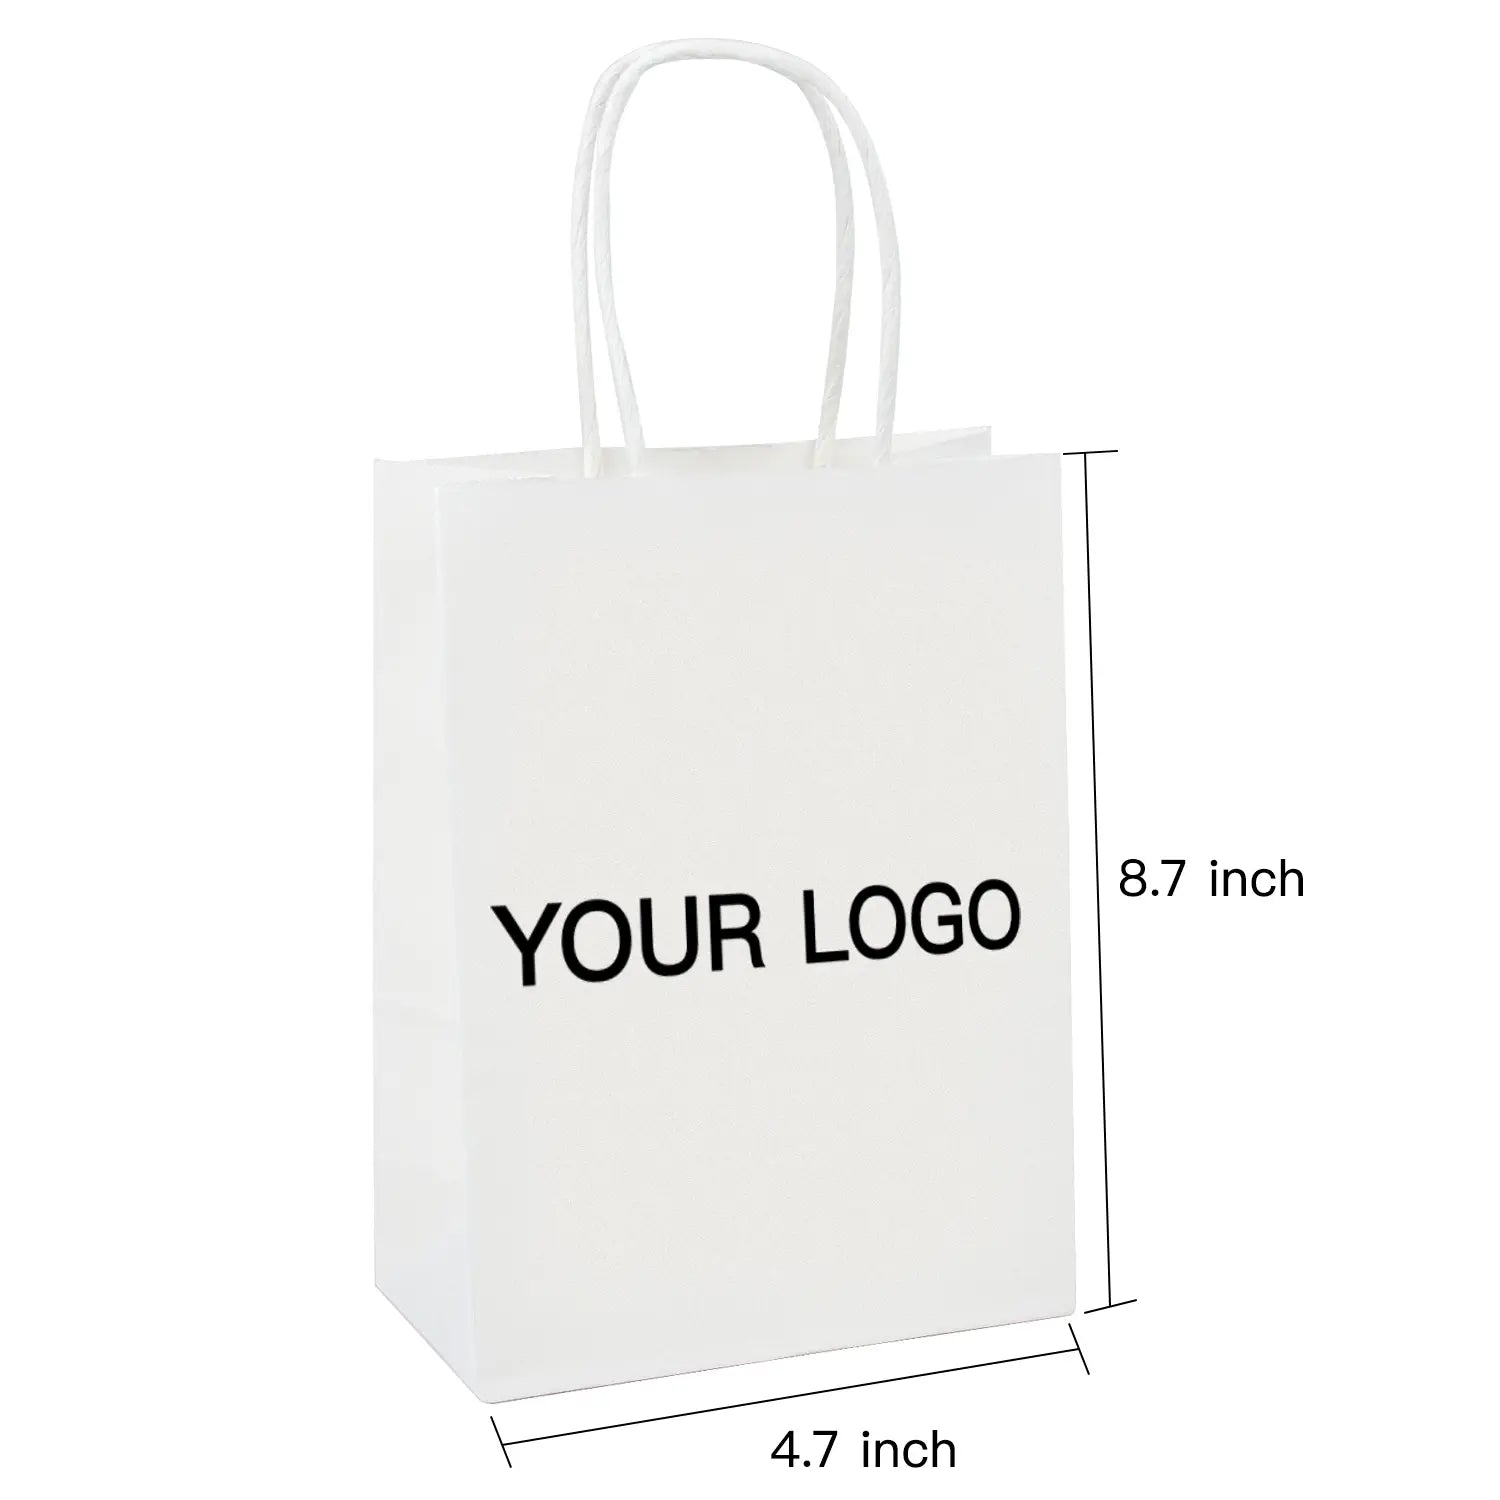 Custom White Shopping Bags Kraft Paper Gift Bags-100PCs